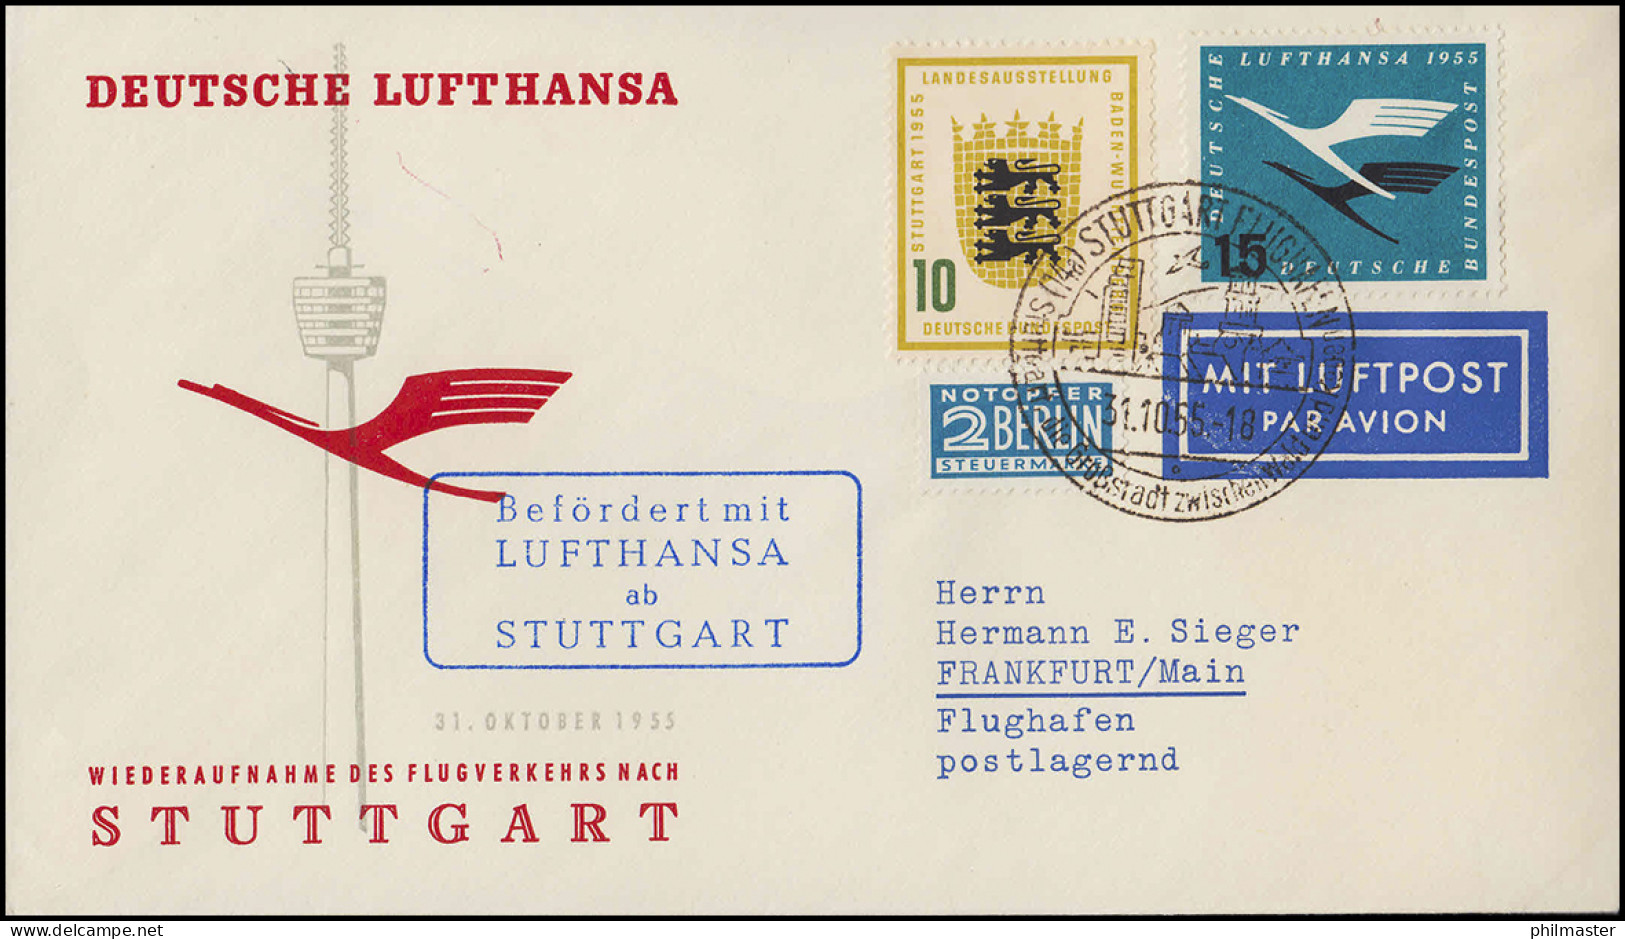 Luftpost Lufthansa Wiederaufnahme Inland Flugverkehr Nach Stuttgart, 31.10.1955 - First Flight Covers